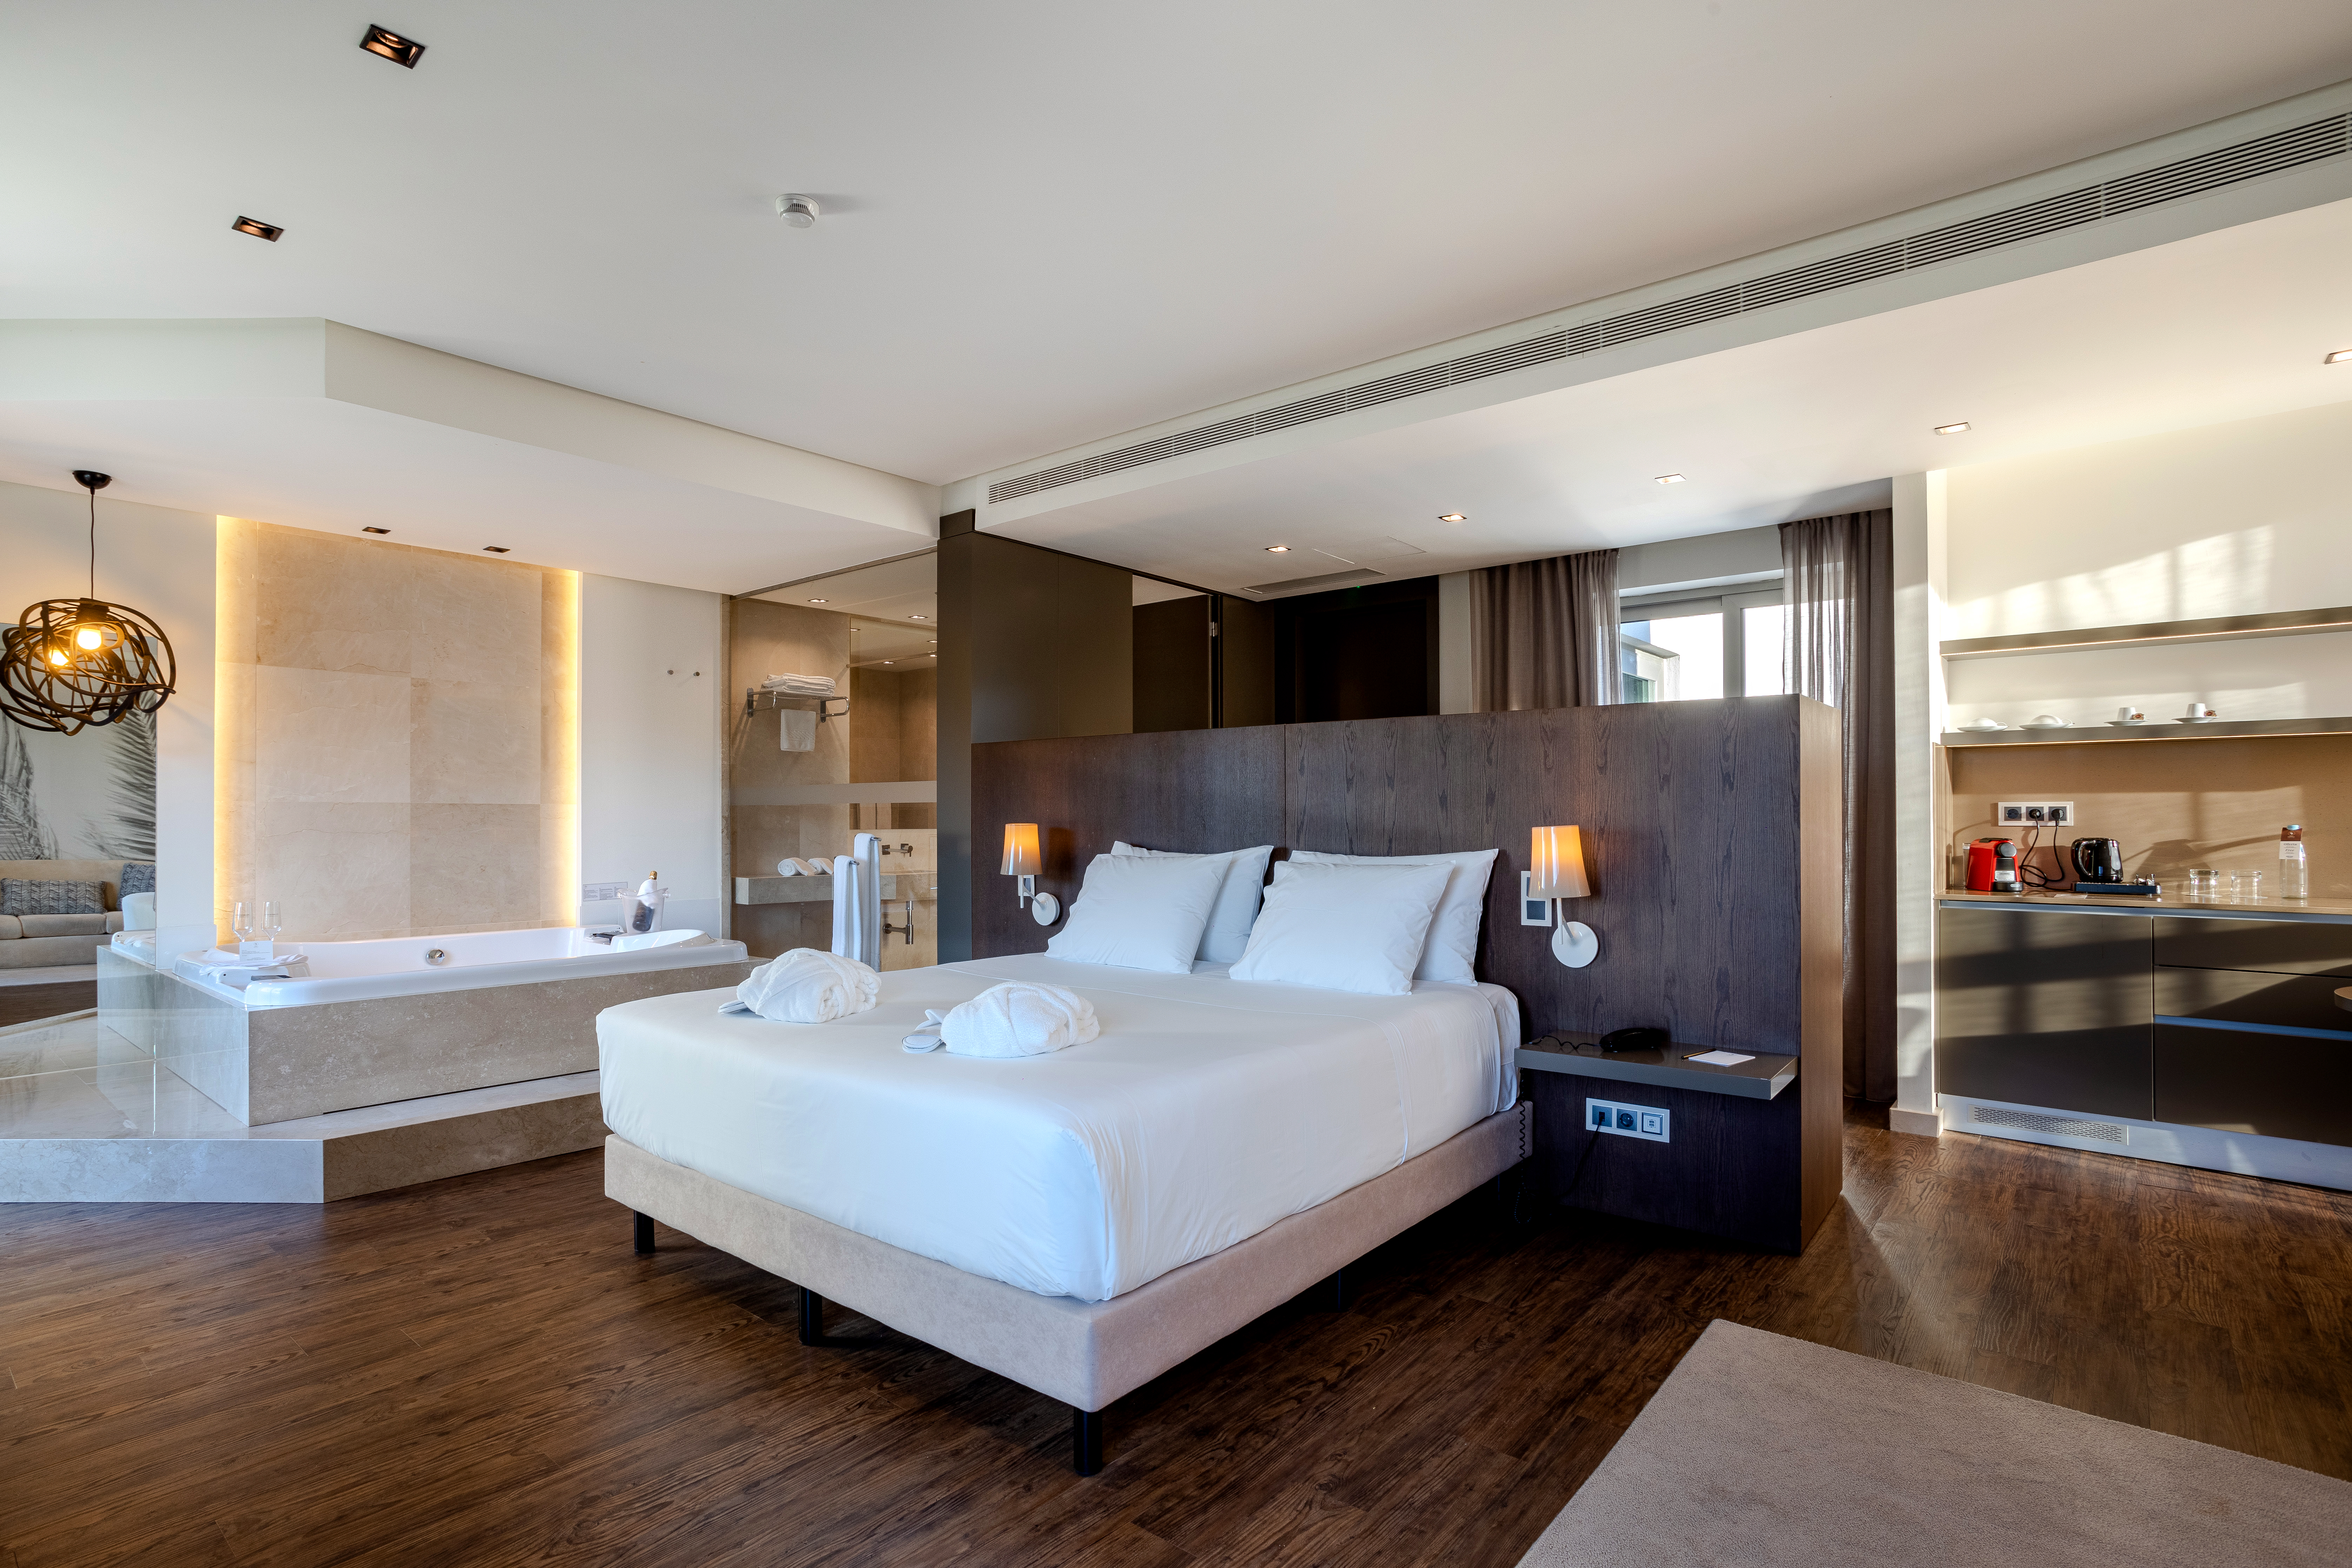 Espaçosas, confortáveis e luxuosas. Conheça as nossas suites!